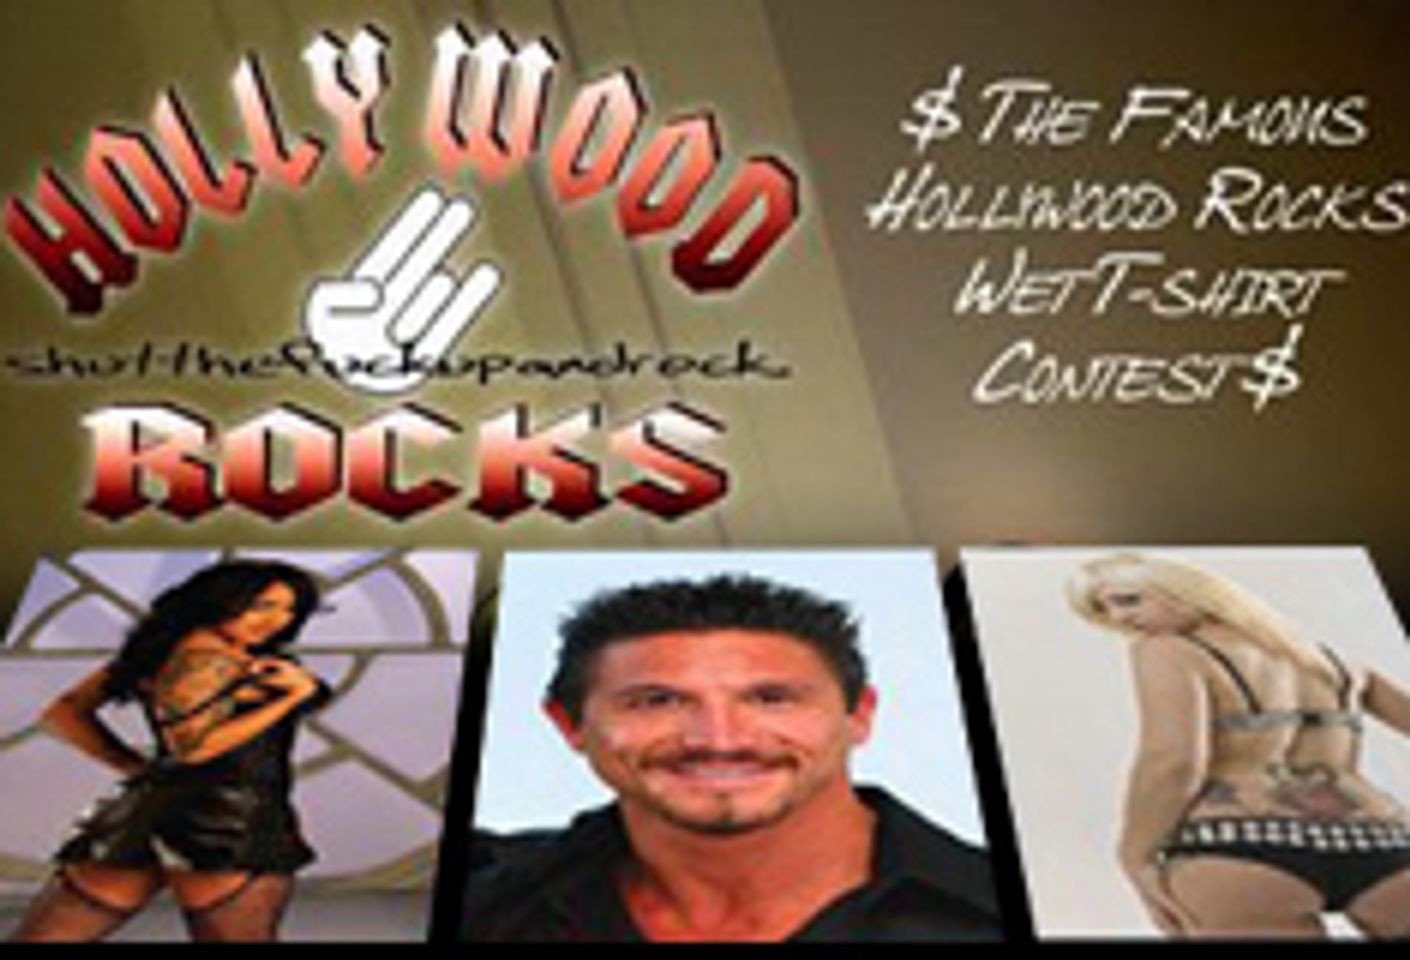 Hollywood Rocks Monday Night at The Viper Room